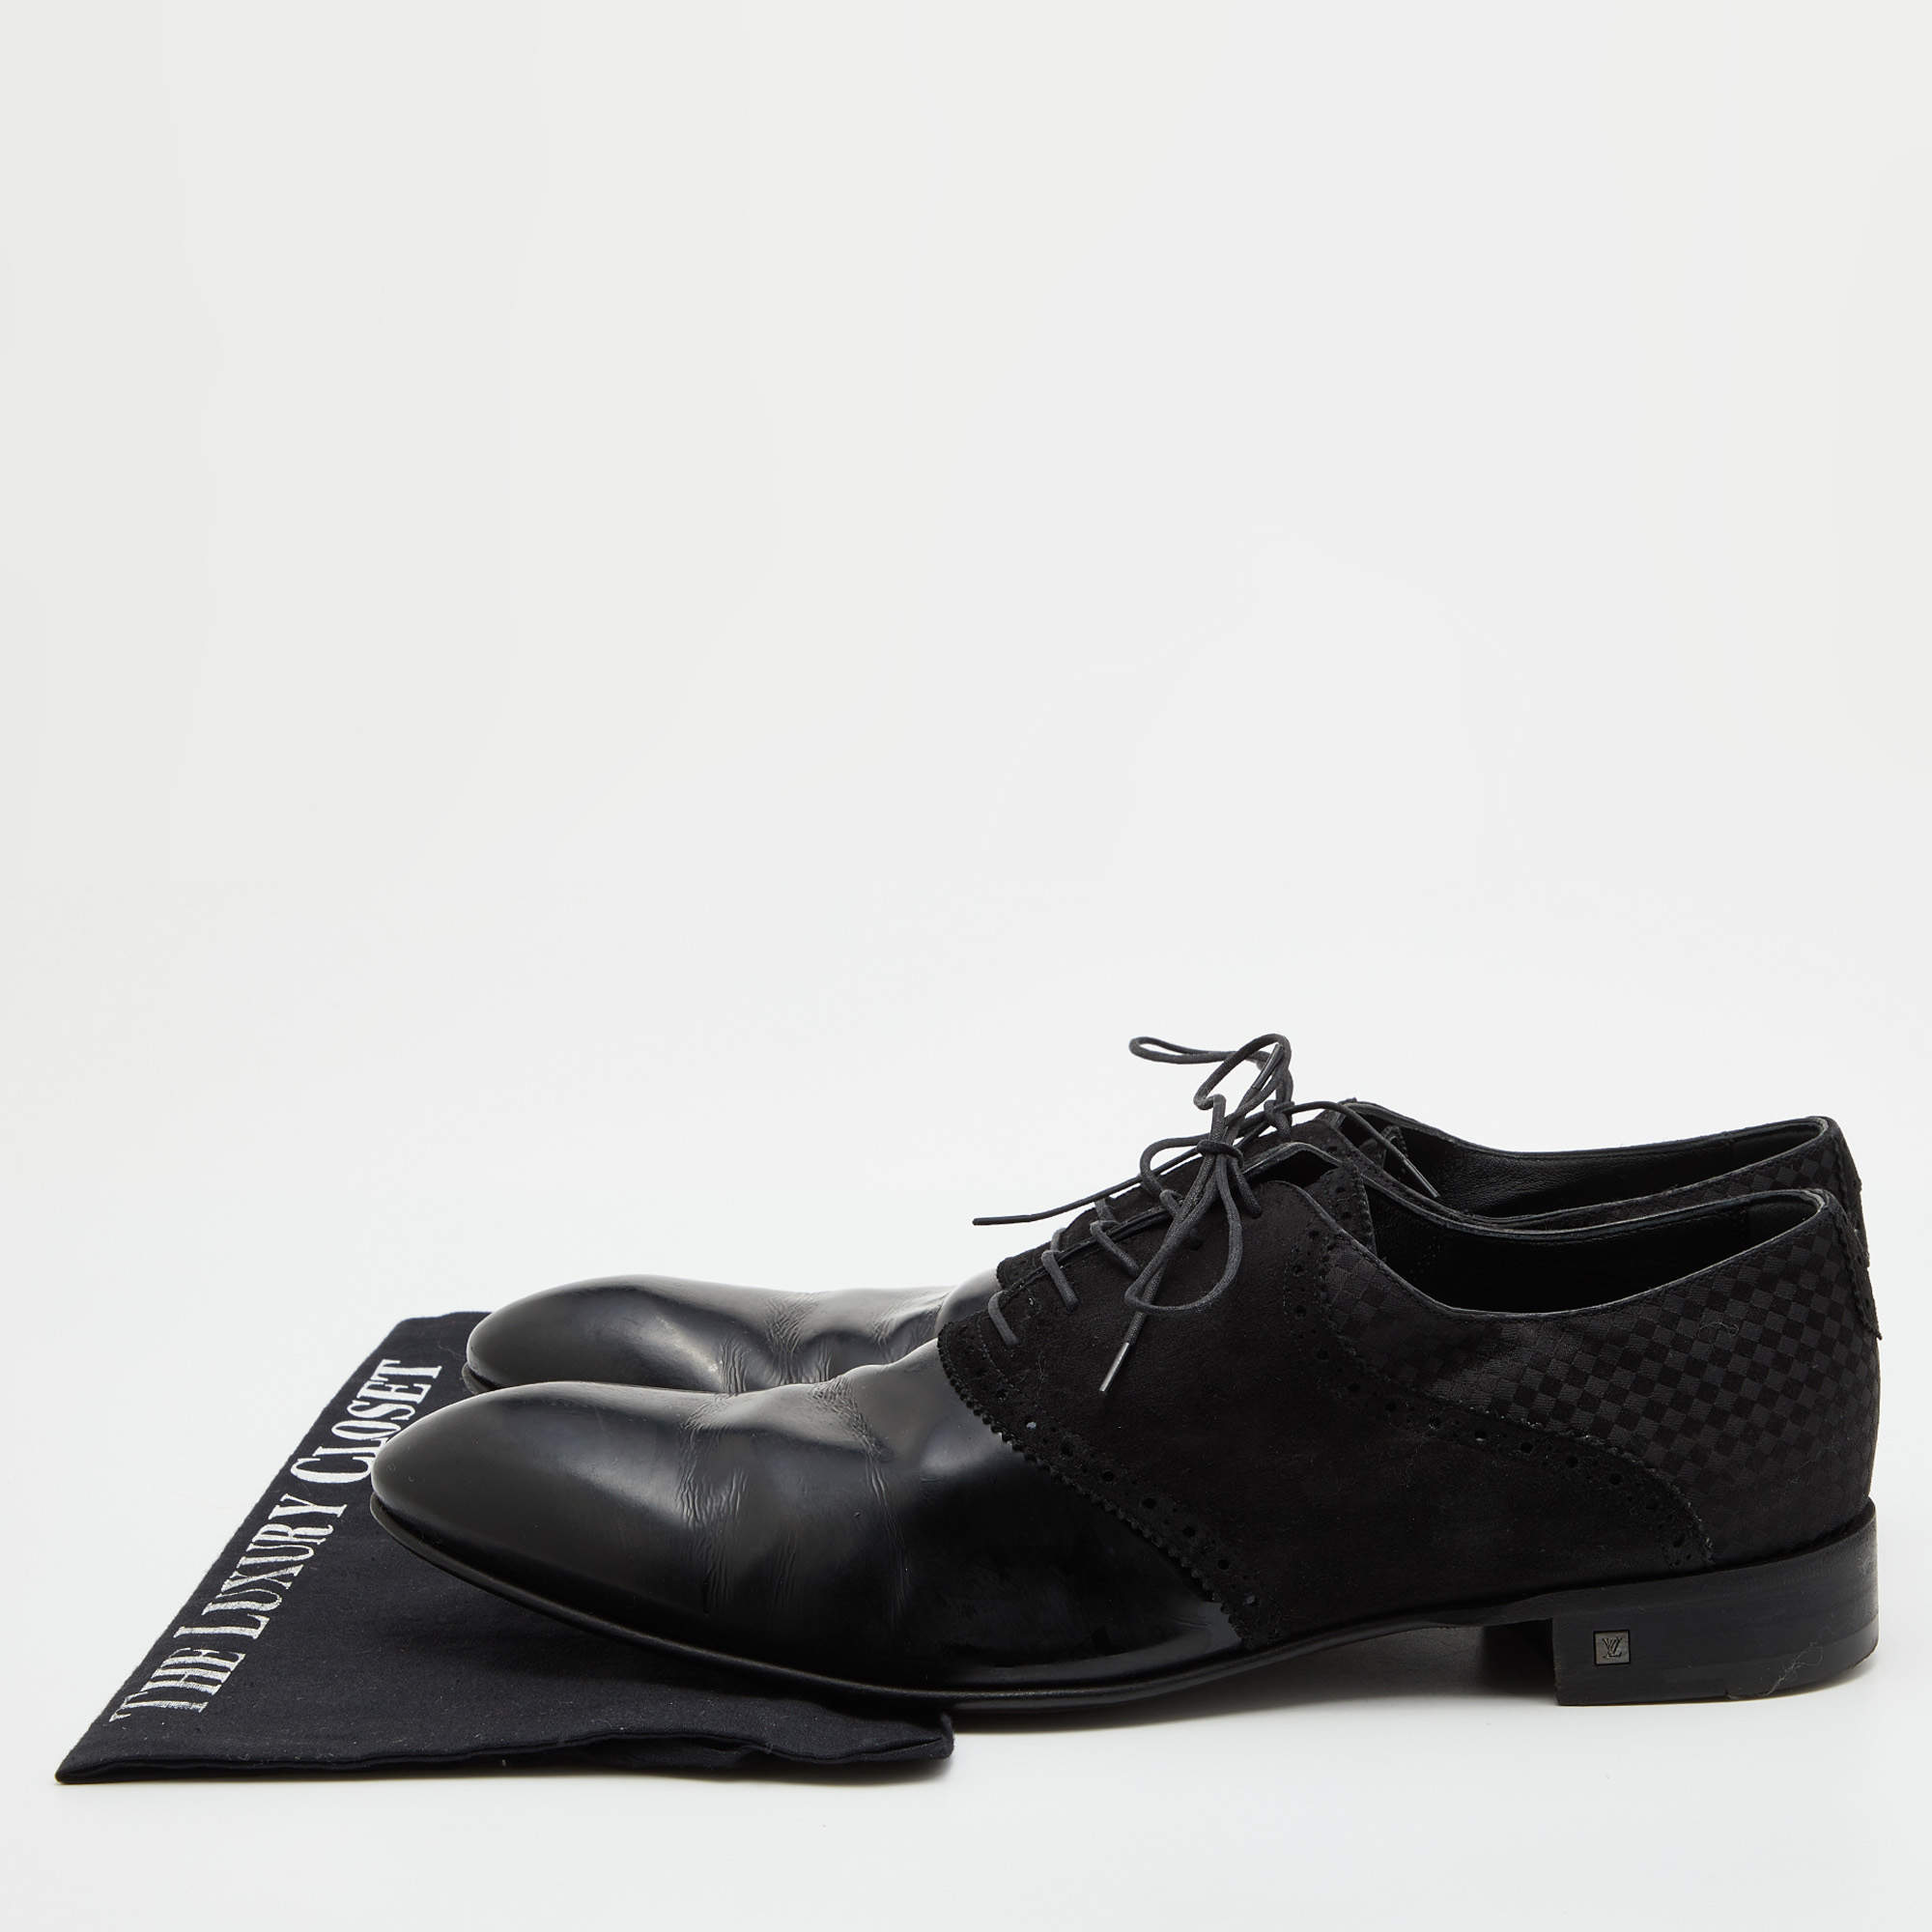 Louis Vuitton - Lace-up shoes - Size: Shoes / EU 43.5, UK 9,5